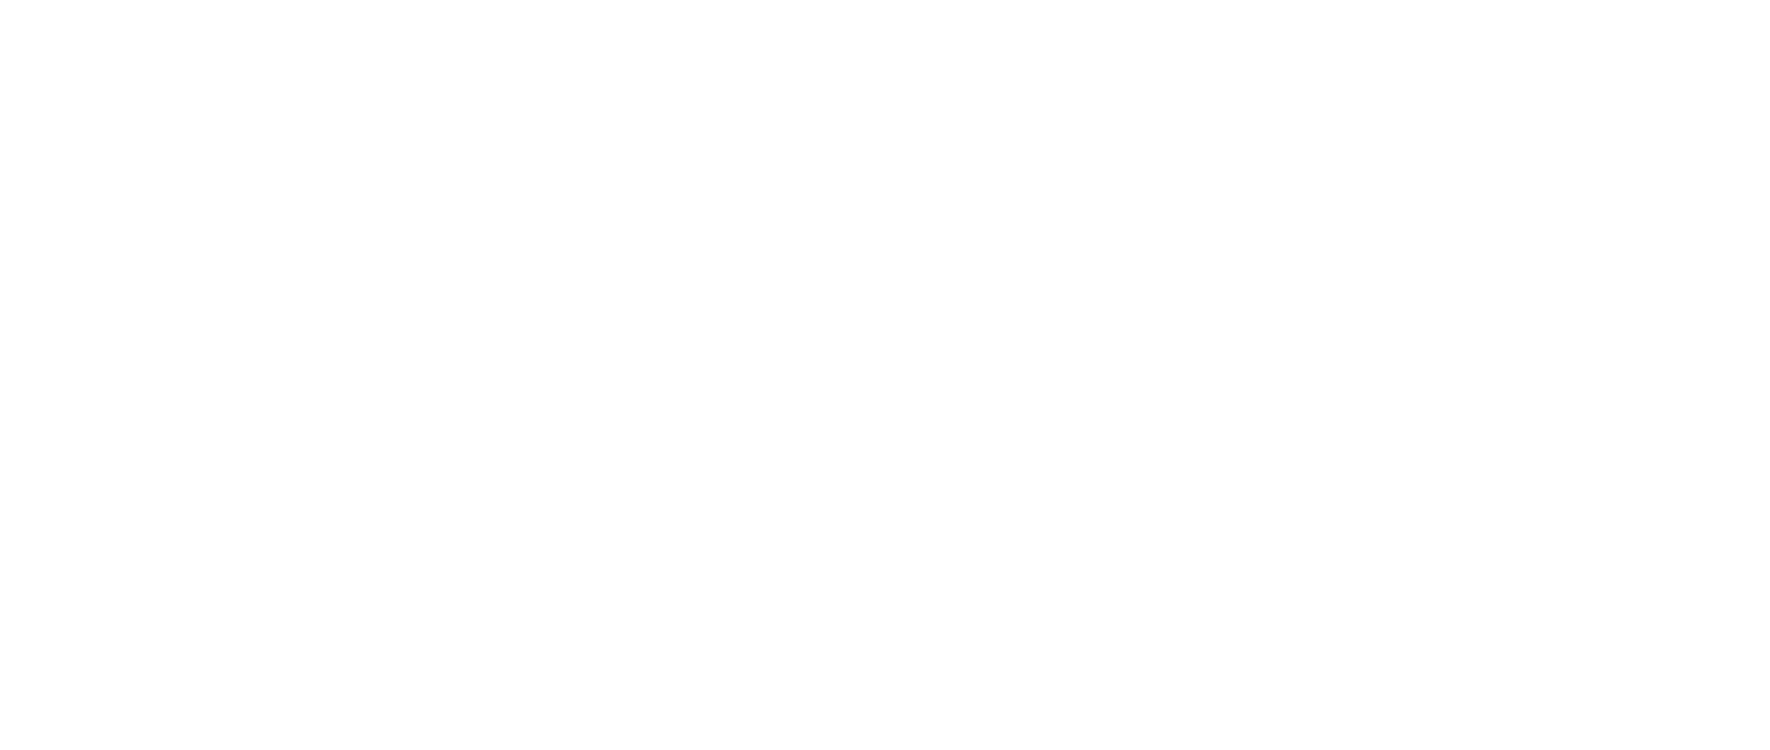 Trust_handshake-7